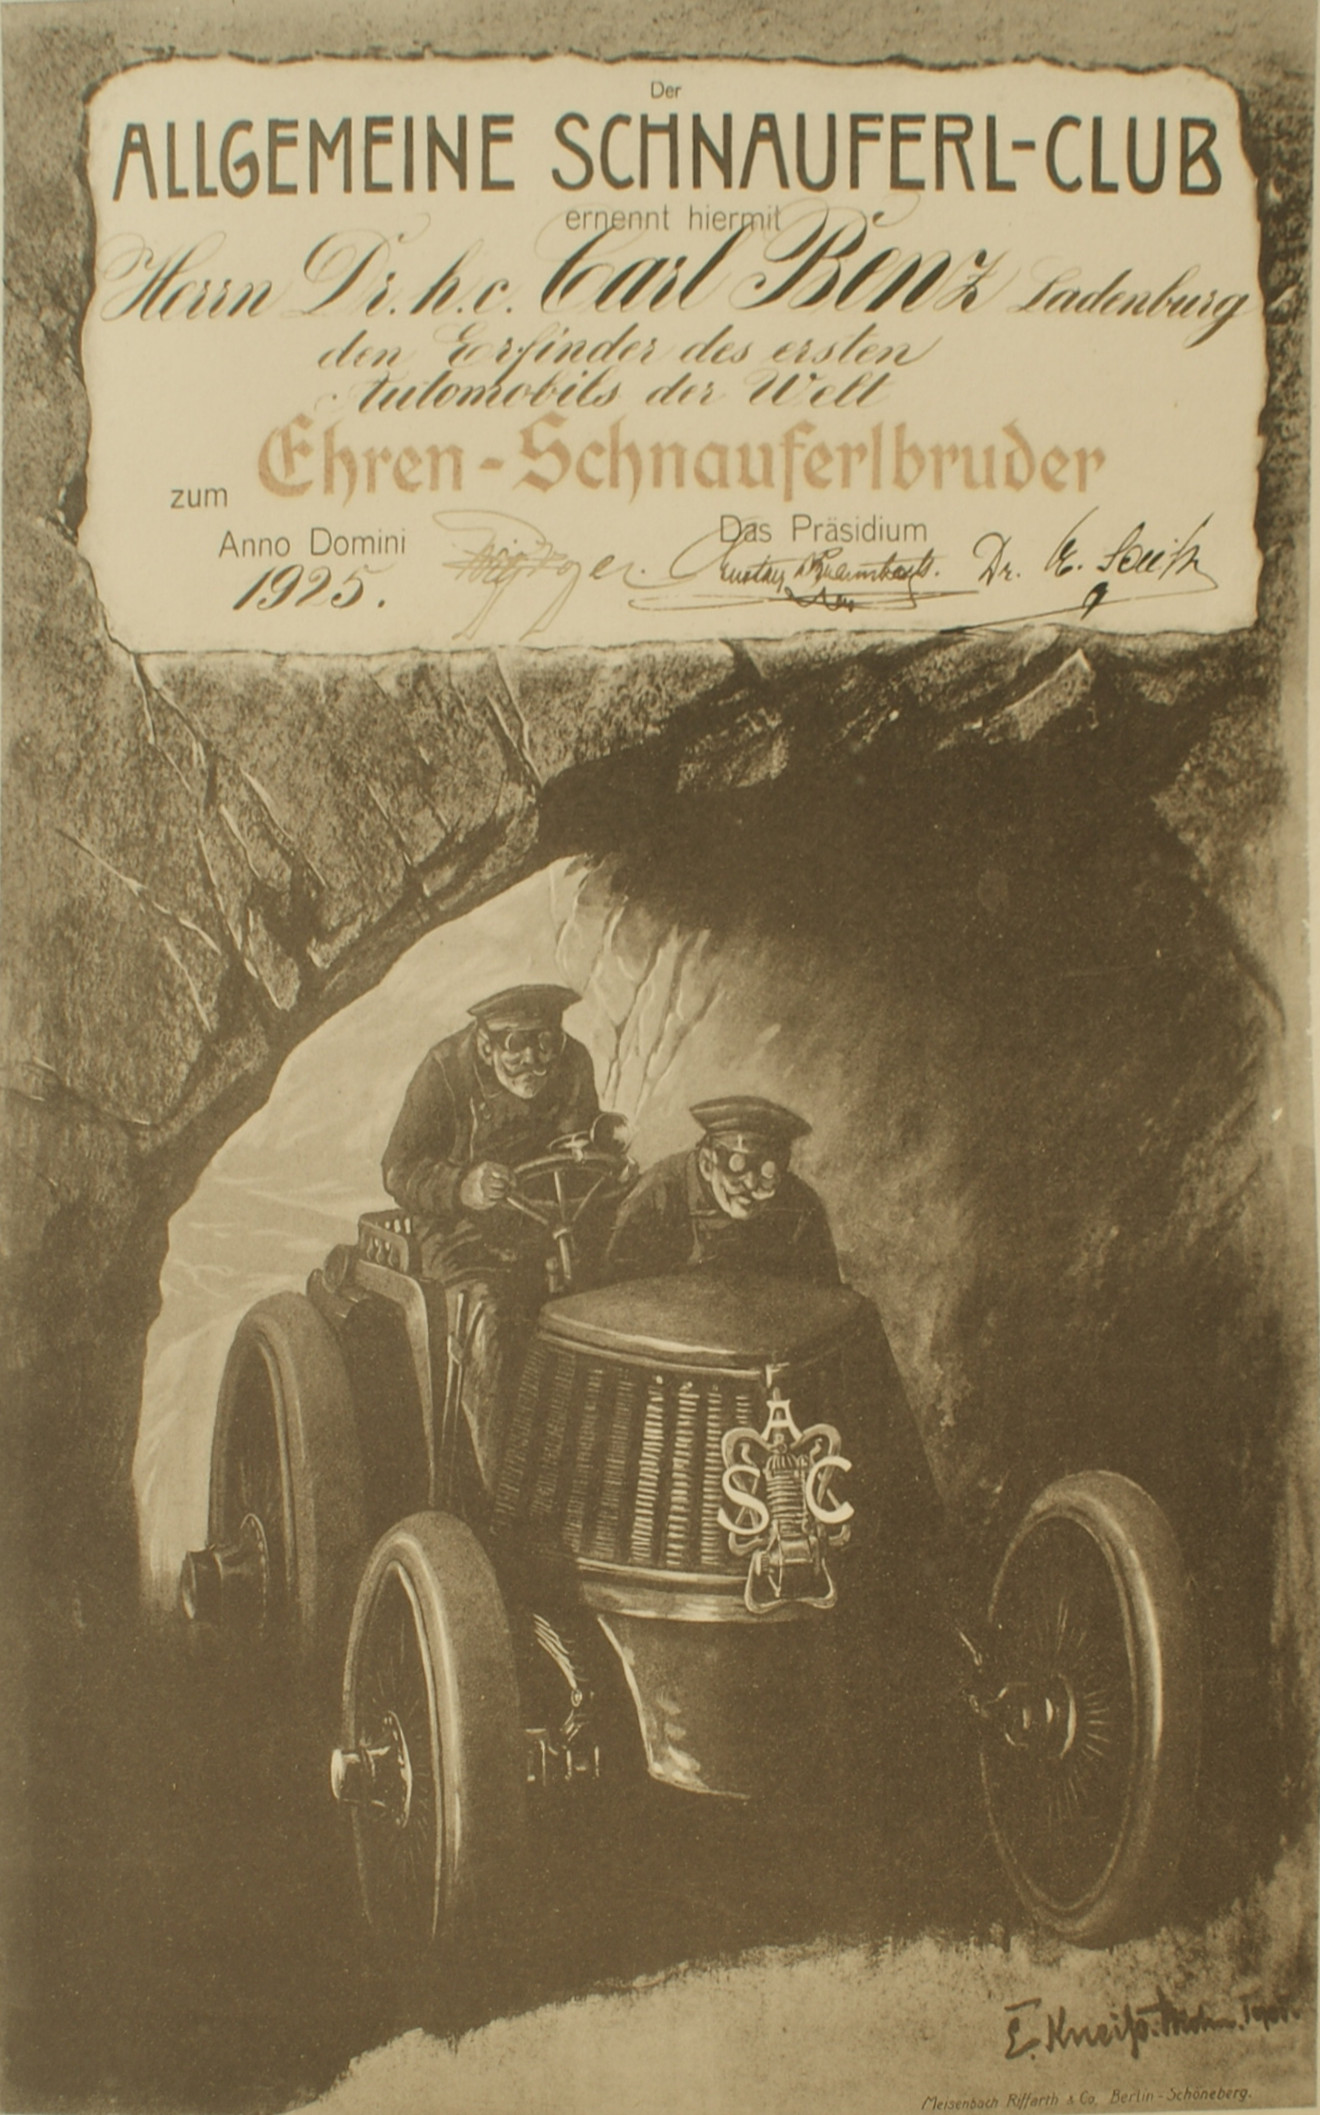 Ernennung von Carl Benz zum Ehrenschnauferl-Bruder 1925